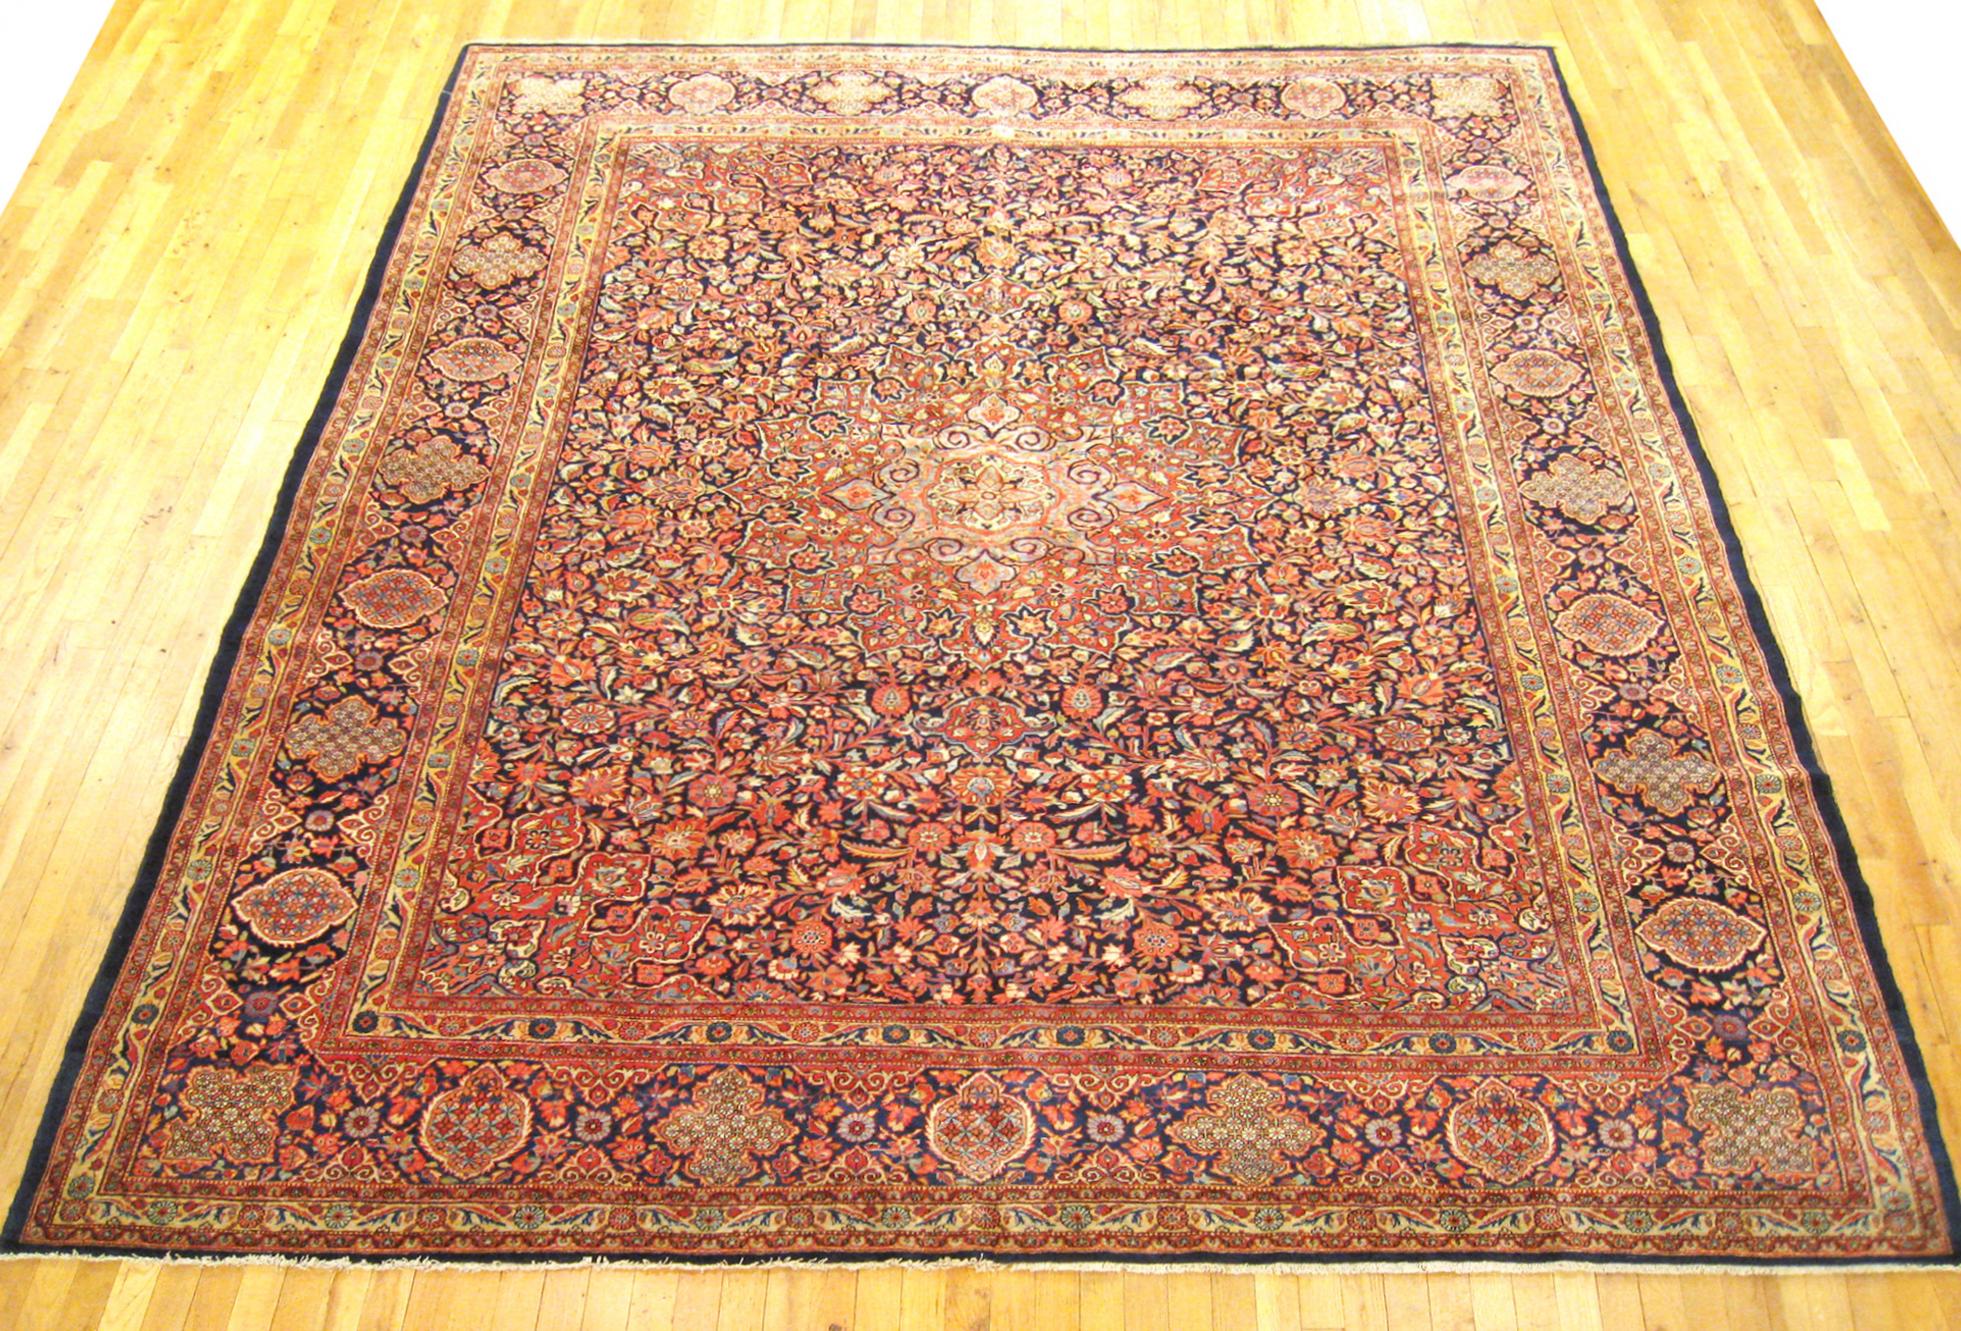 Antiker persischer Kashan Dabir Orientteppich, in Zimmergröße.

Ein außergewöhnlicher antiker persischer Kashan Dabir Teppich, um 1910, Größe 11'7